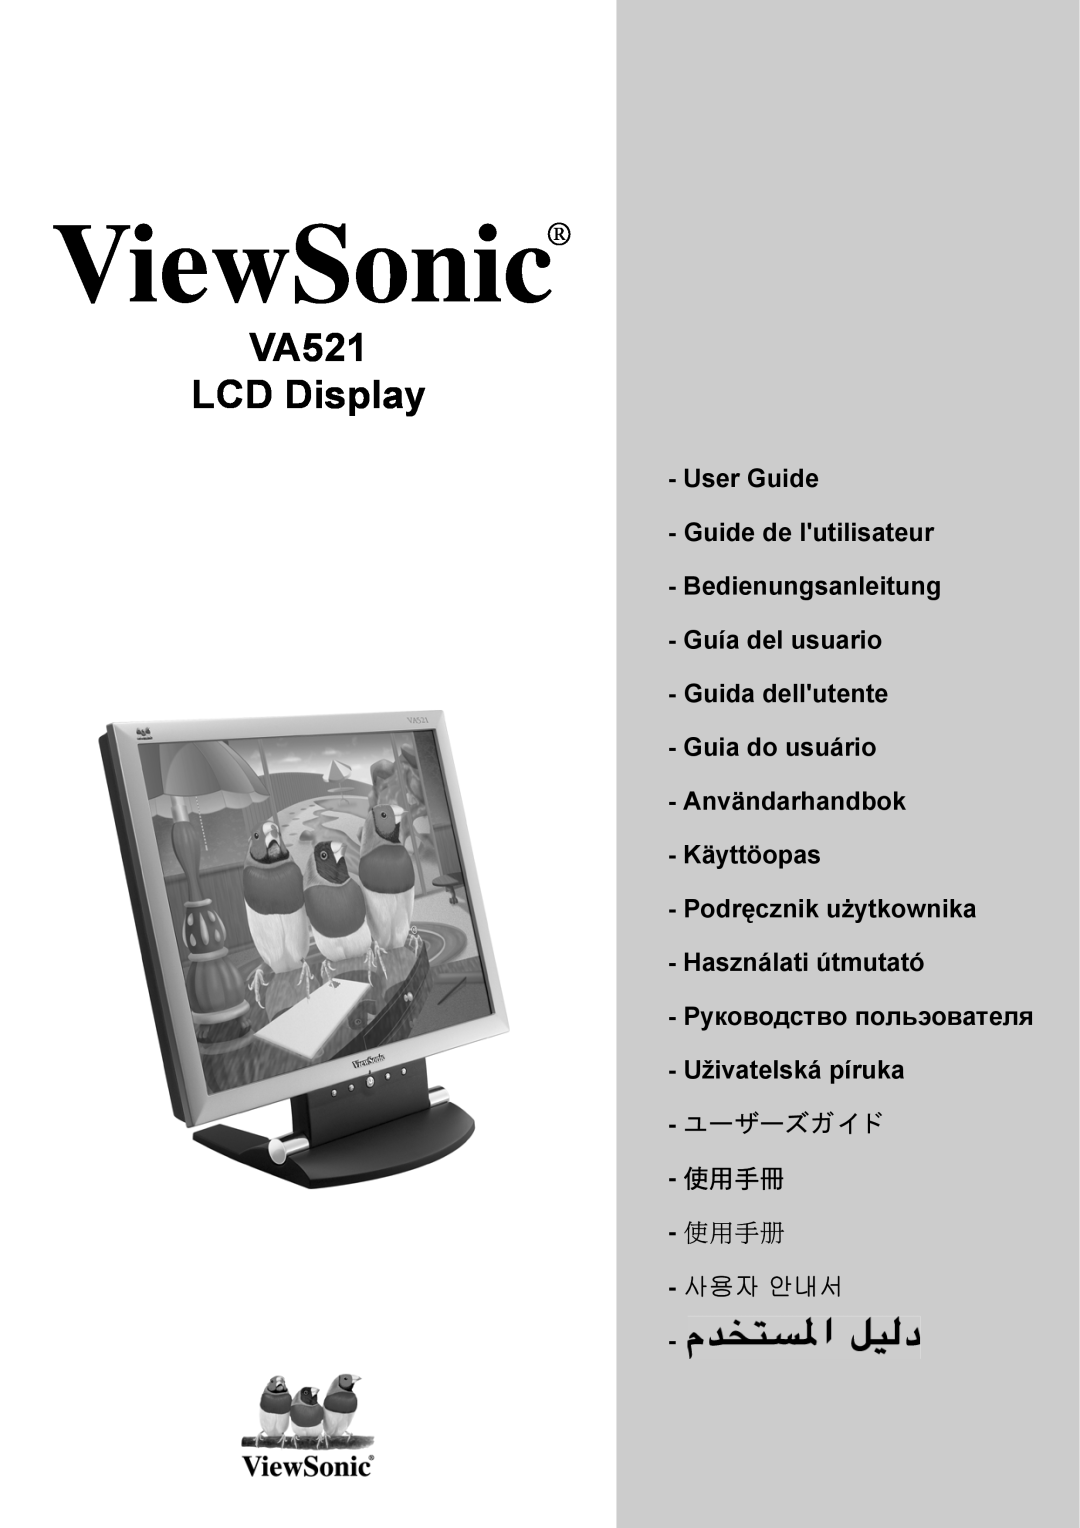 ViewSonic VA521 manual User Guide, Guida dellutente - Guia do usuário Användarhandbok Käyttöopas, ViewSonic, ユーザーズガイ ド 